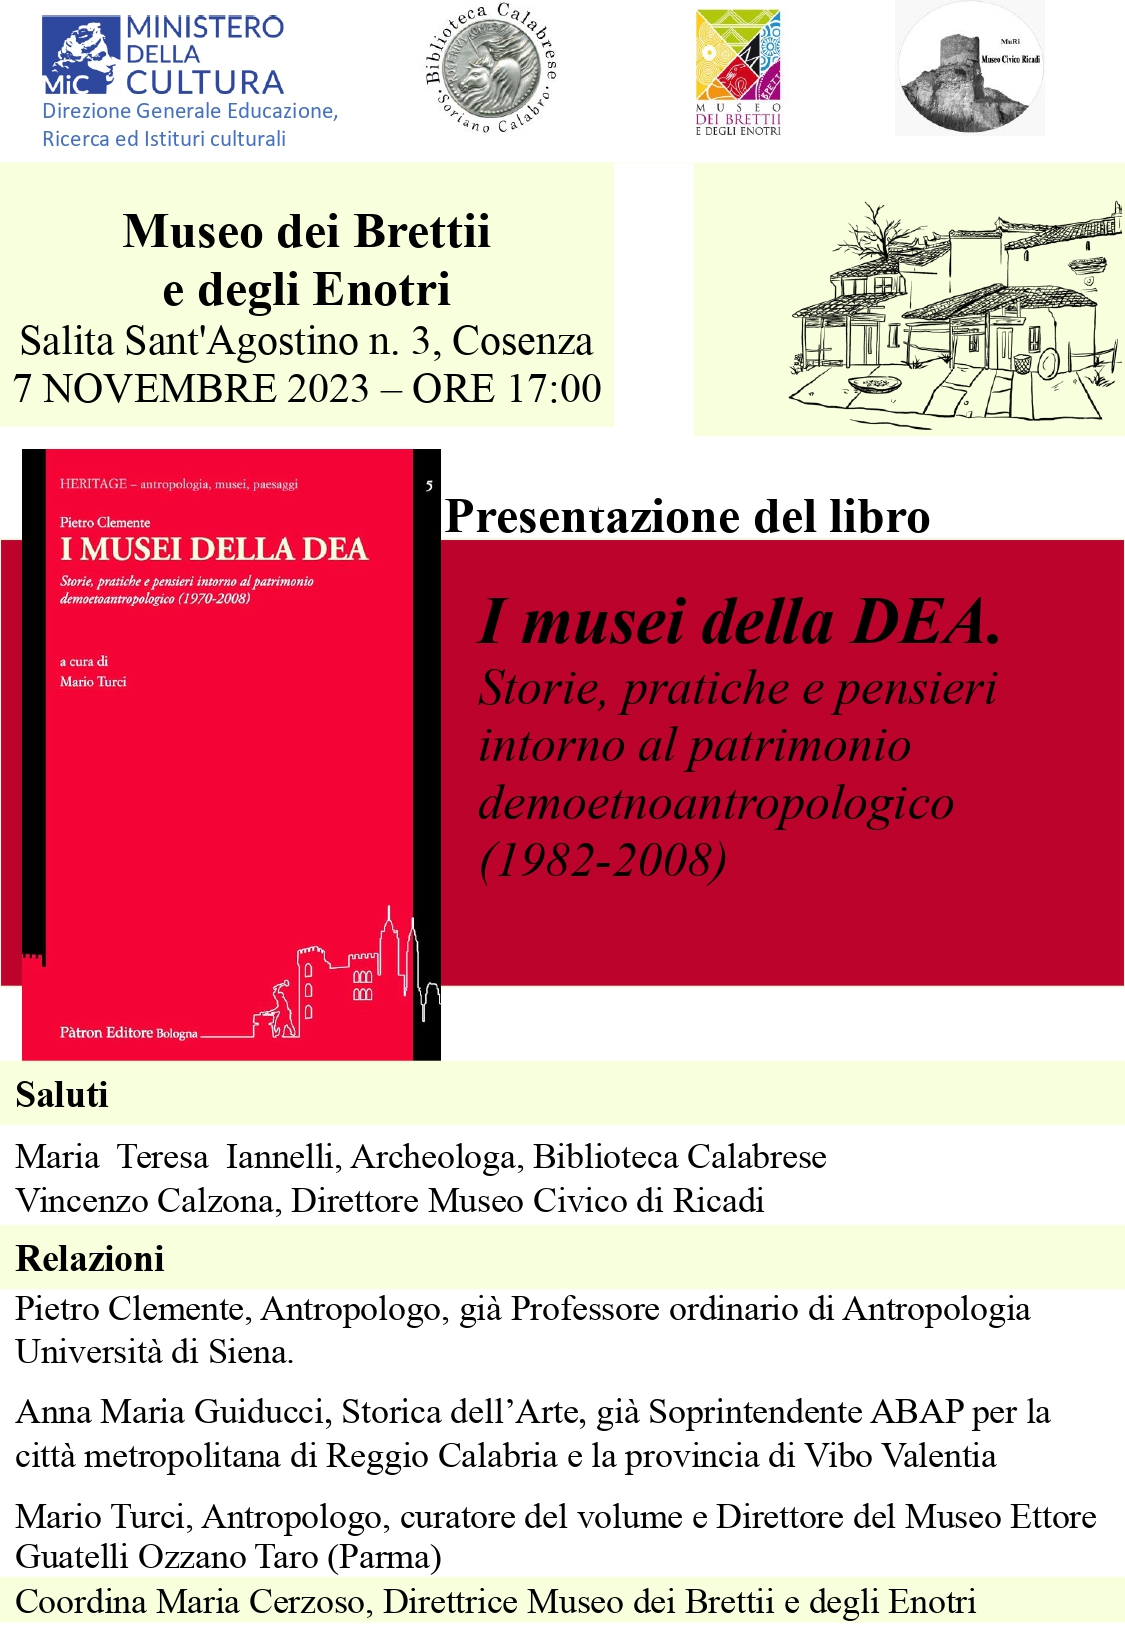 Presentazione del libro "I Musei della DEA. Storie, pratiche e pensieri intorno al patrimonio demoetnoantropologico"